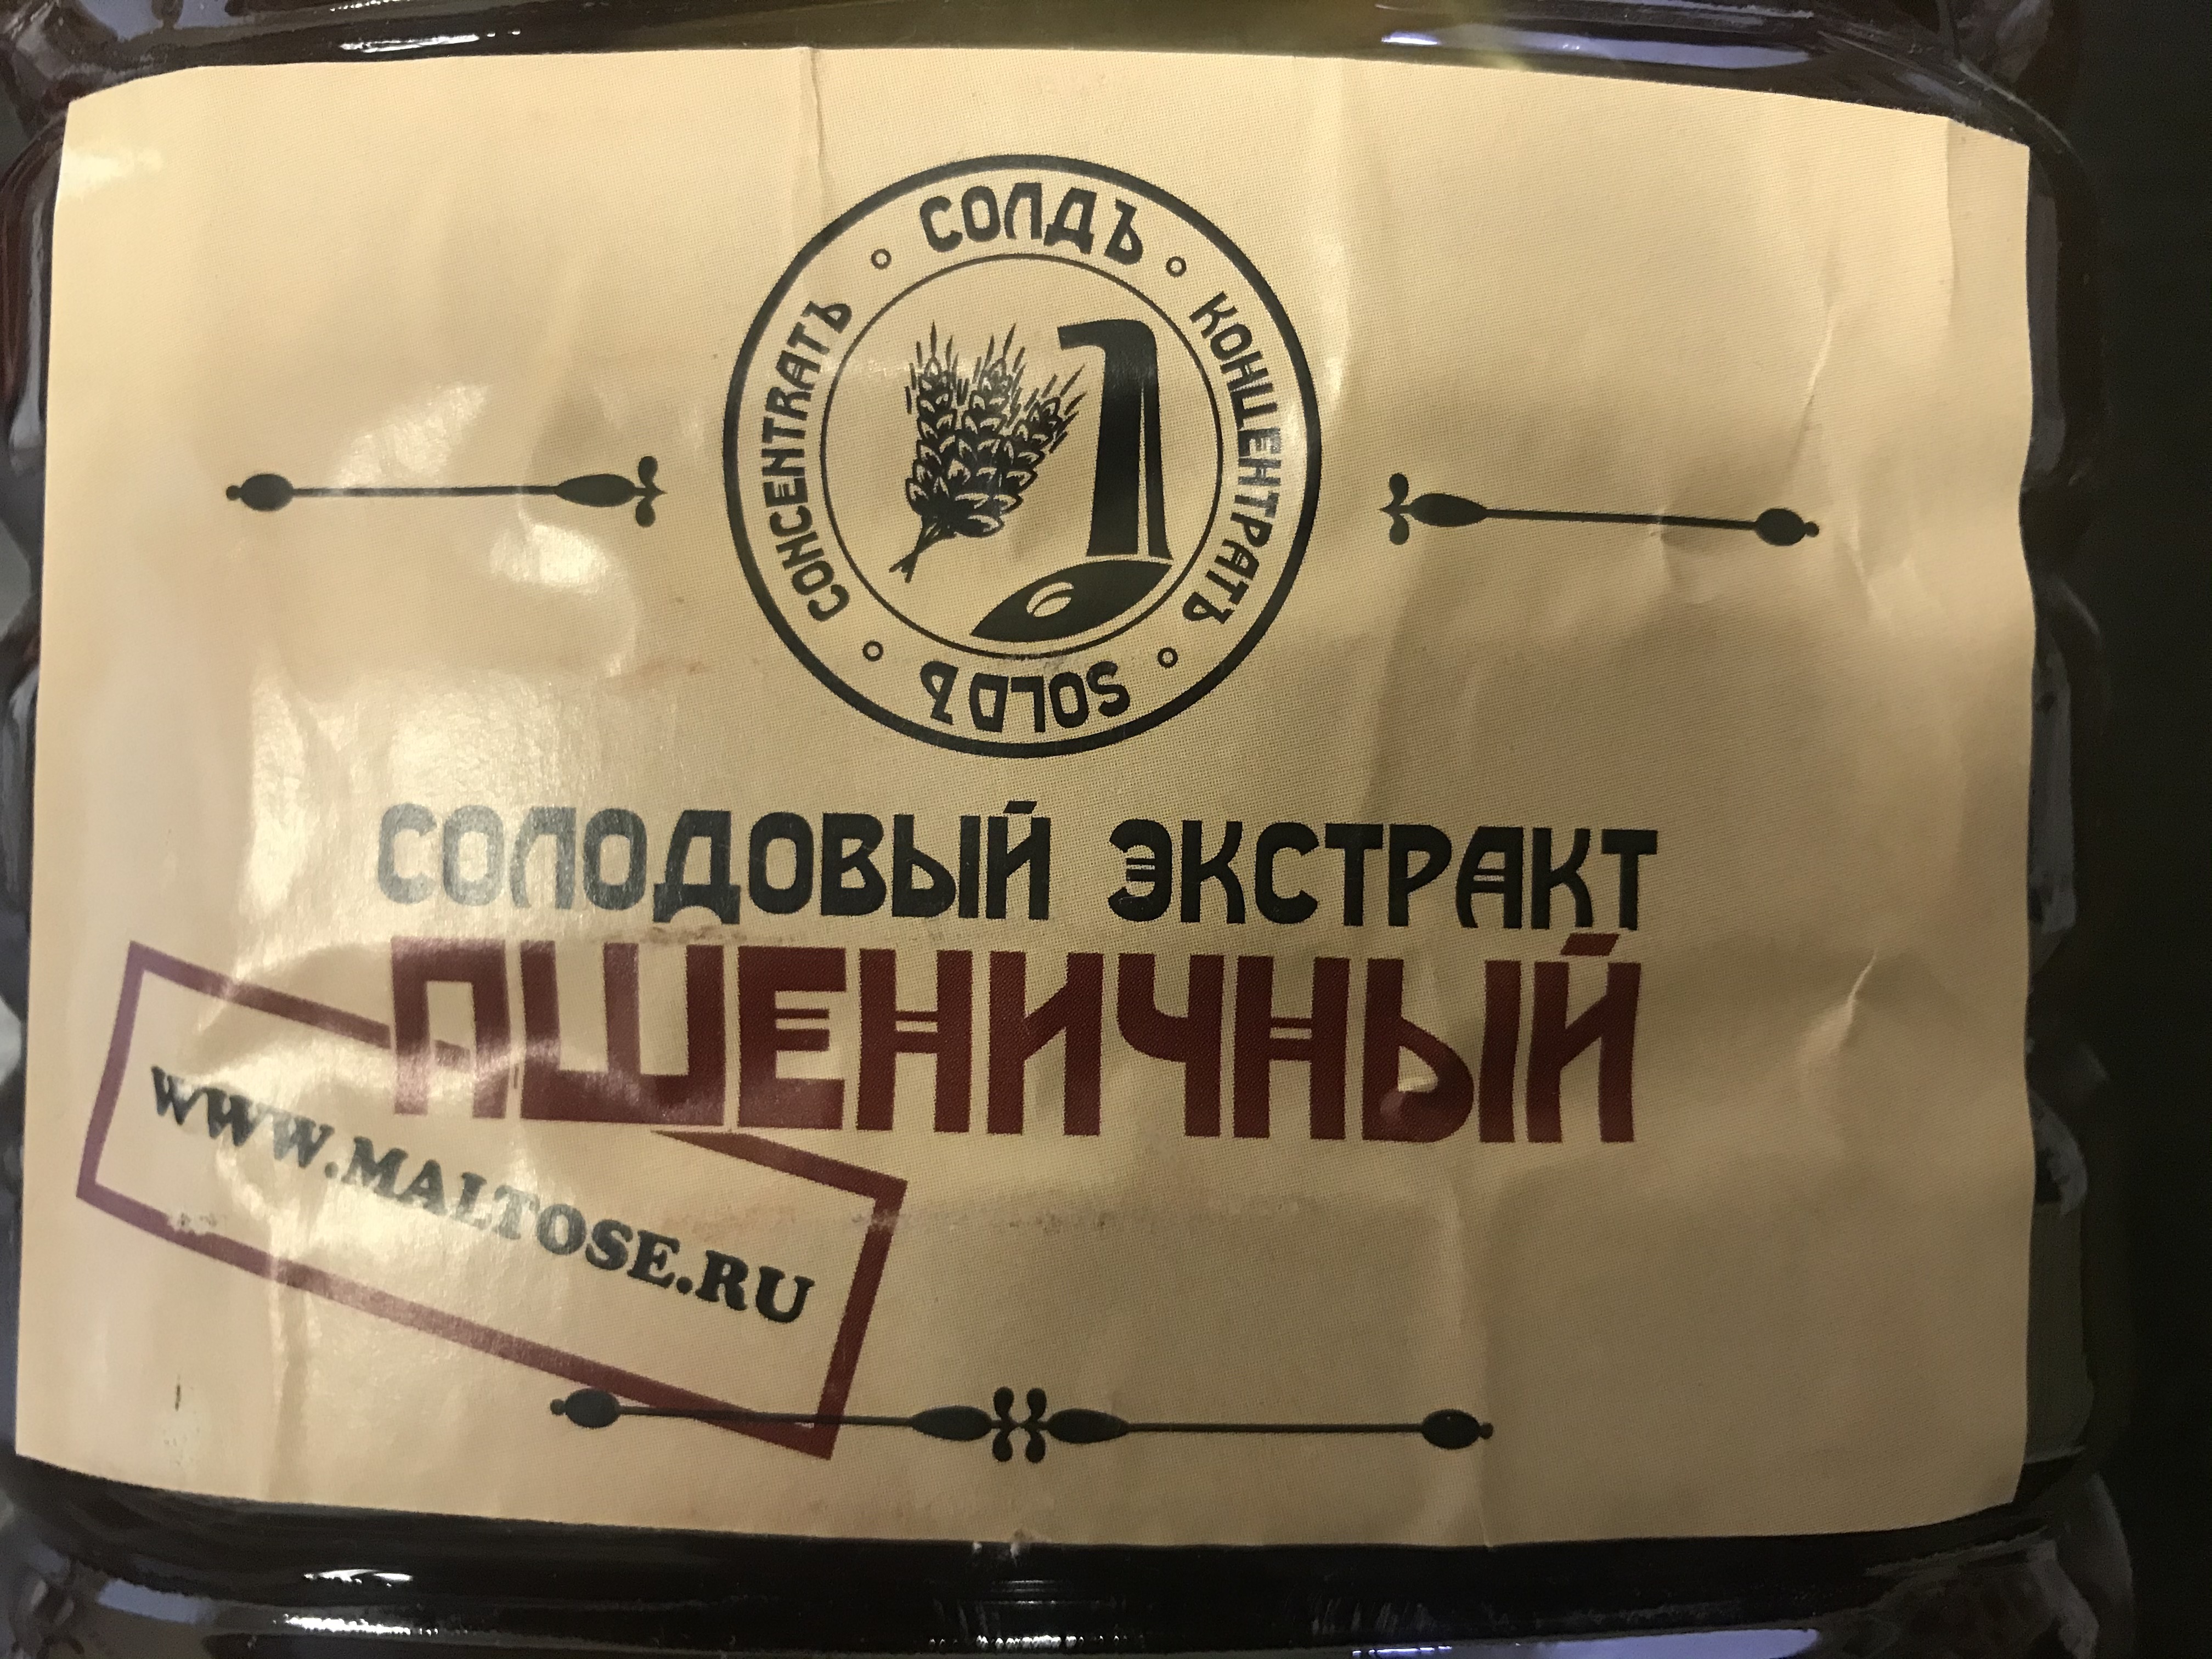 Производство солодовых концентратов в Воронеже на дружинников. Самогон легко магазин